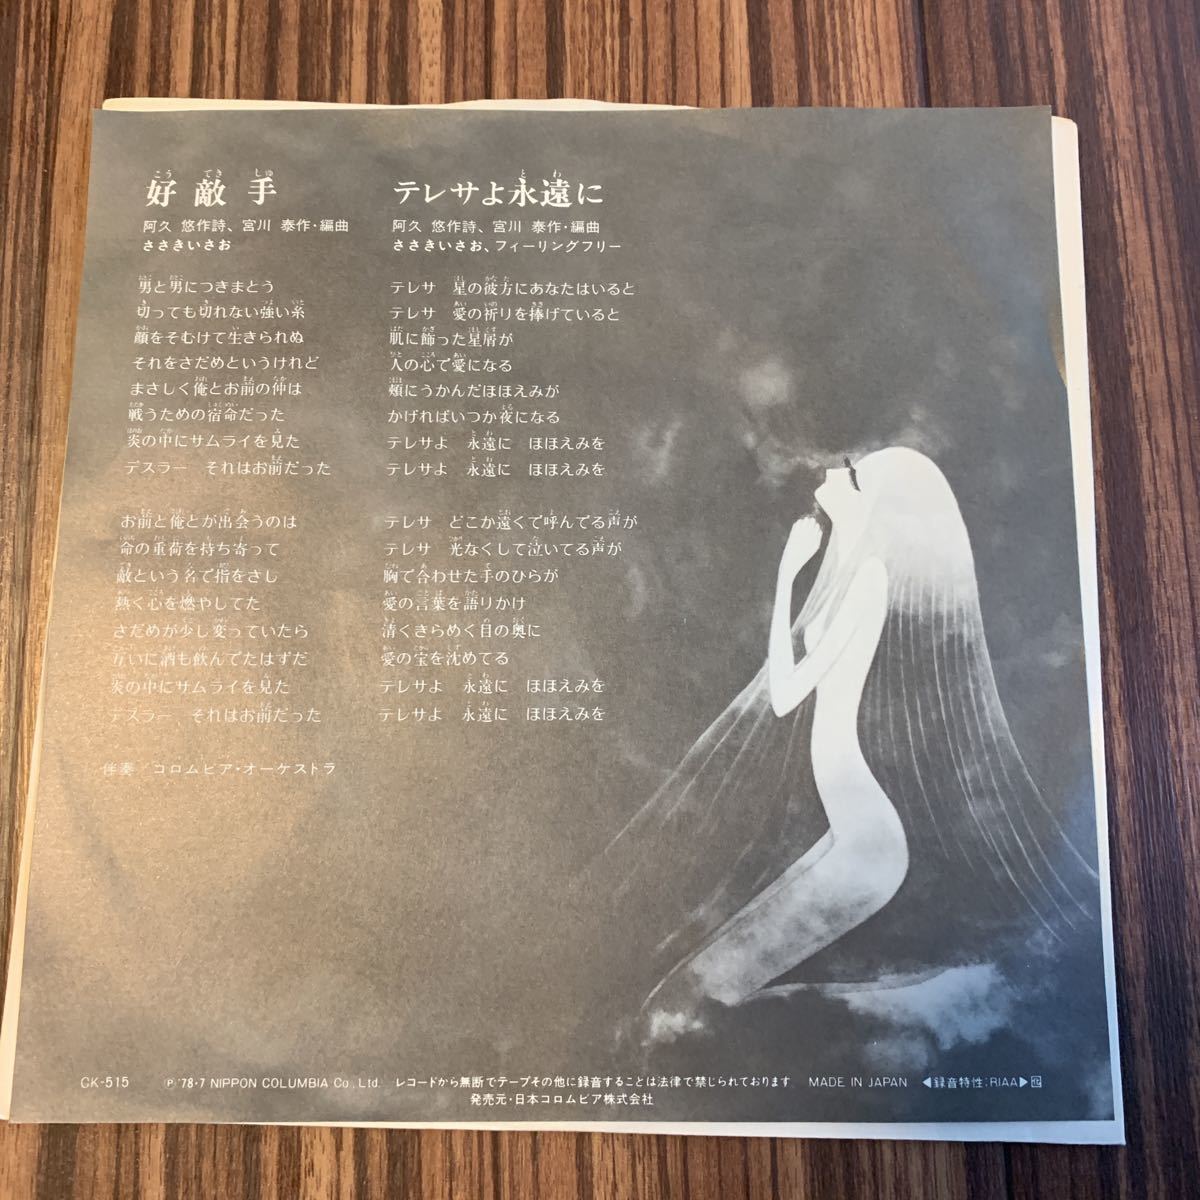  стоимость доставки 140 воспроизведение хороший прекрасный запись EP/... Uchu Senkan Yamato .. рука / teresa ........../CK-515